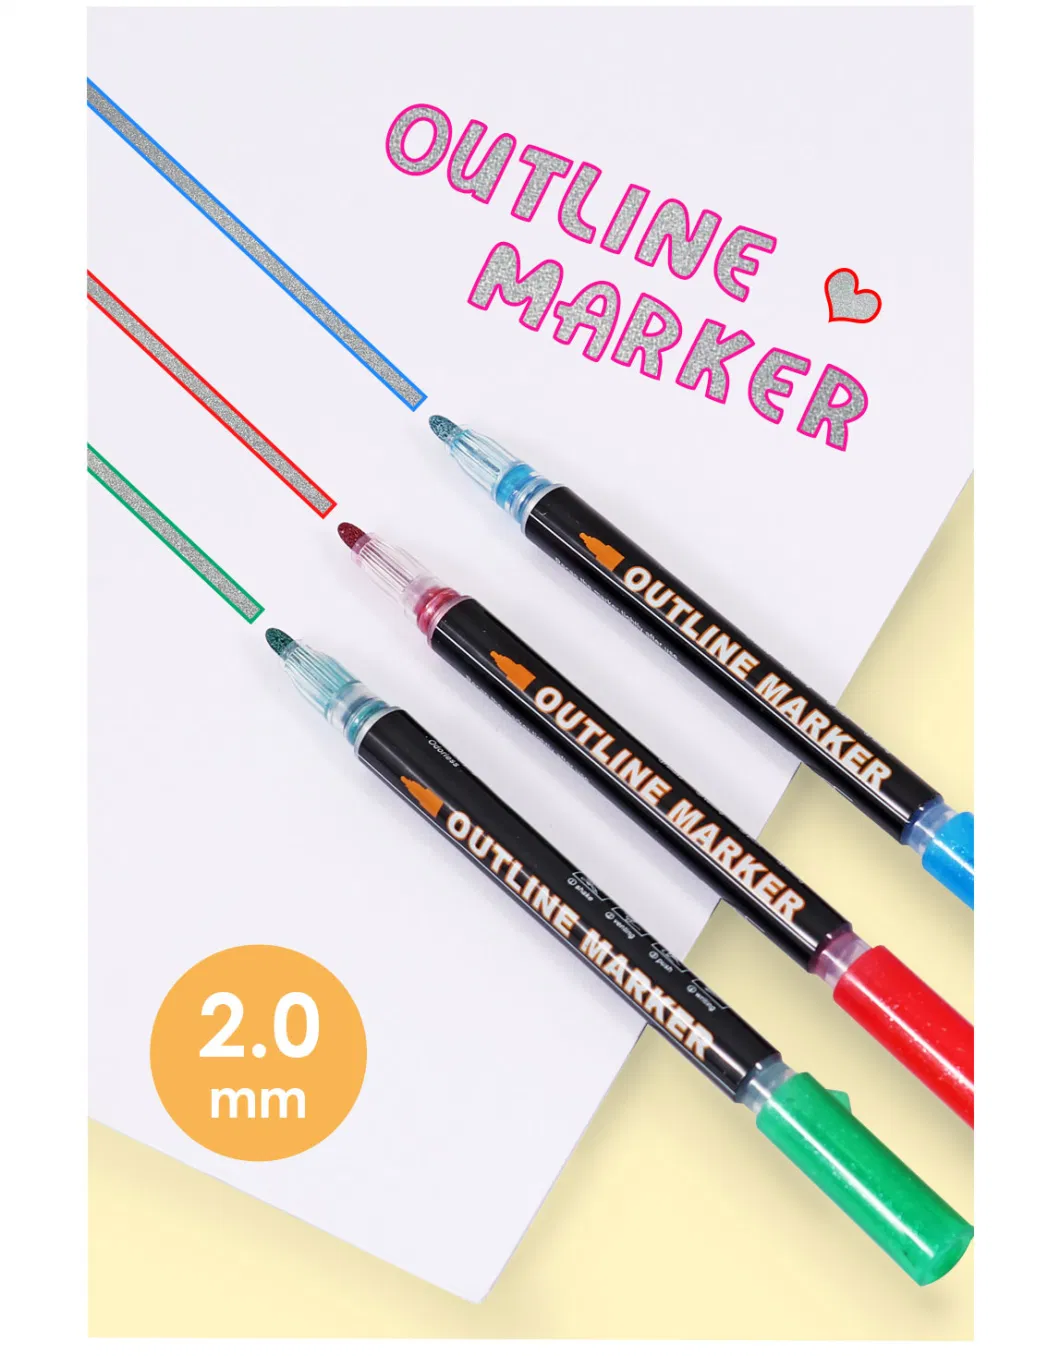 Foska Art Drawing Outline Fineliner Color Marker Pens